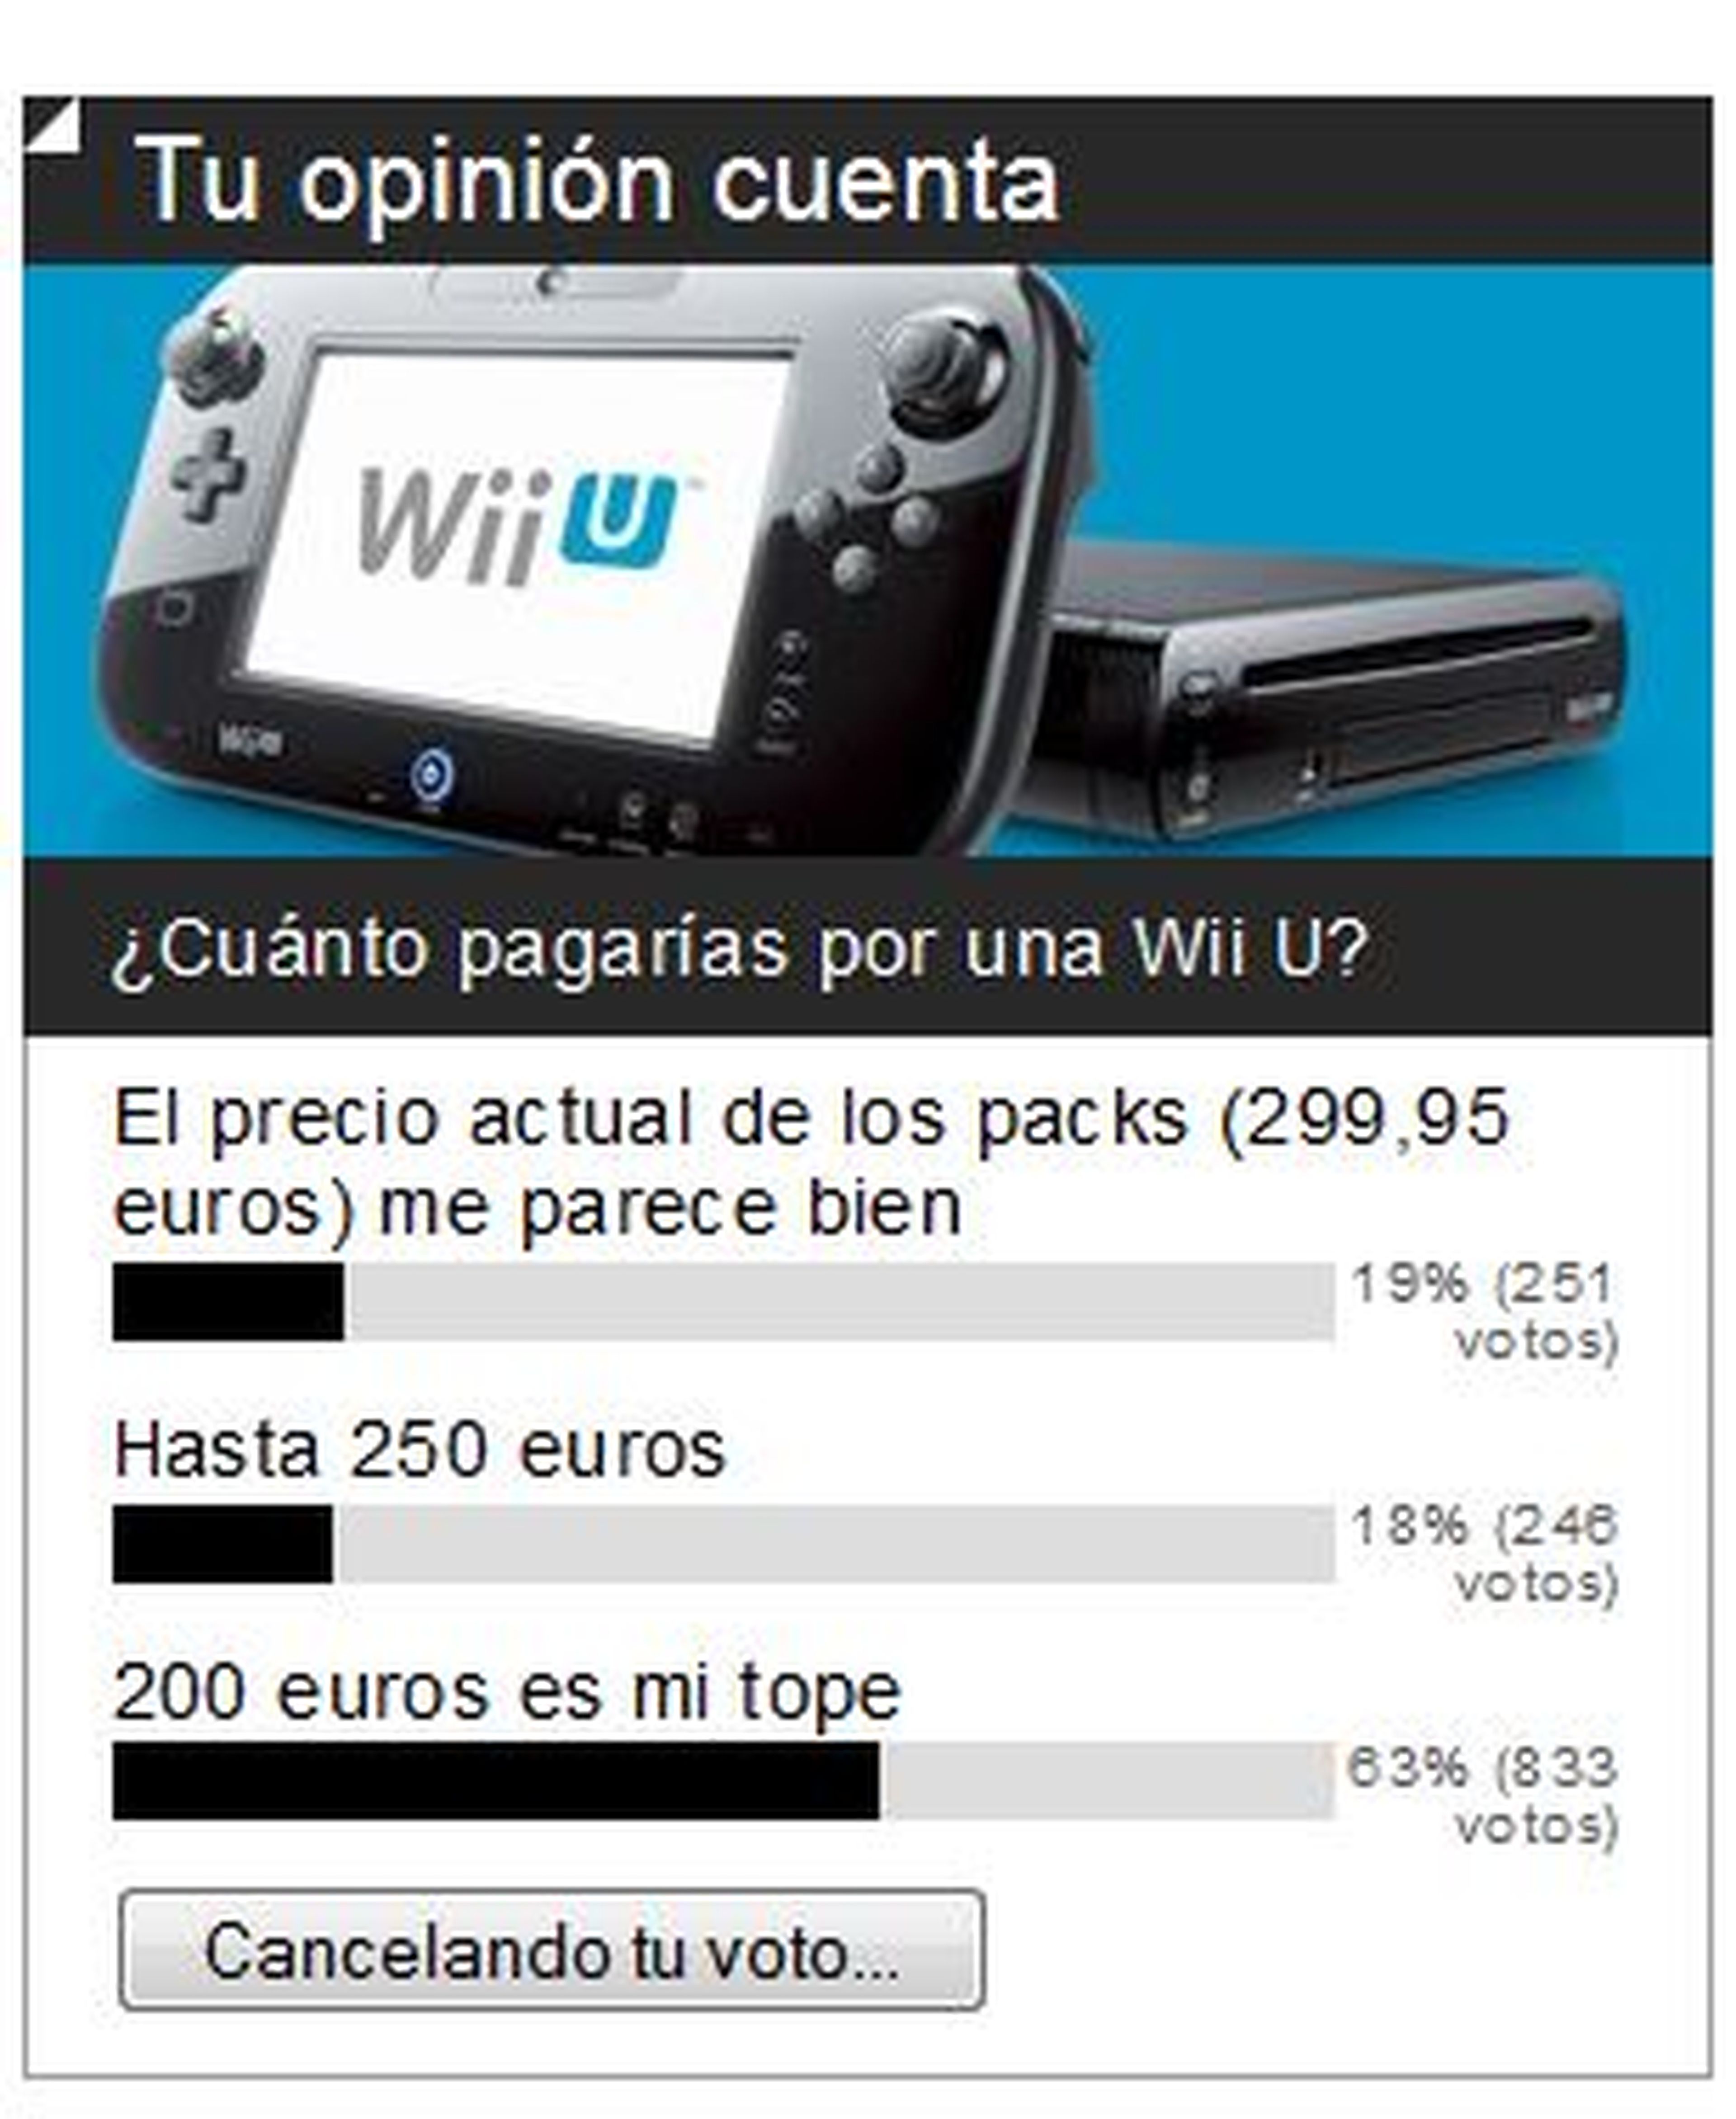 Resultados de encuesta: 200 euros es vuestro tope para Wii U